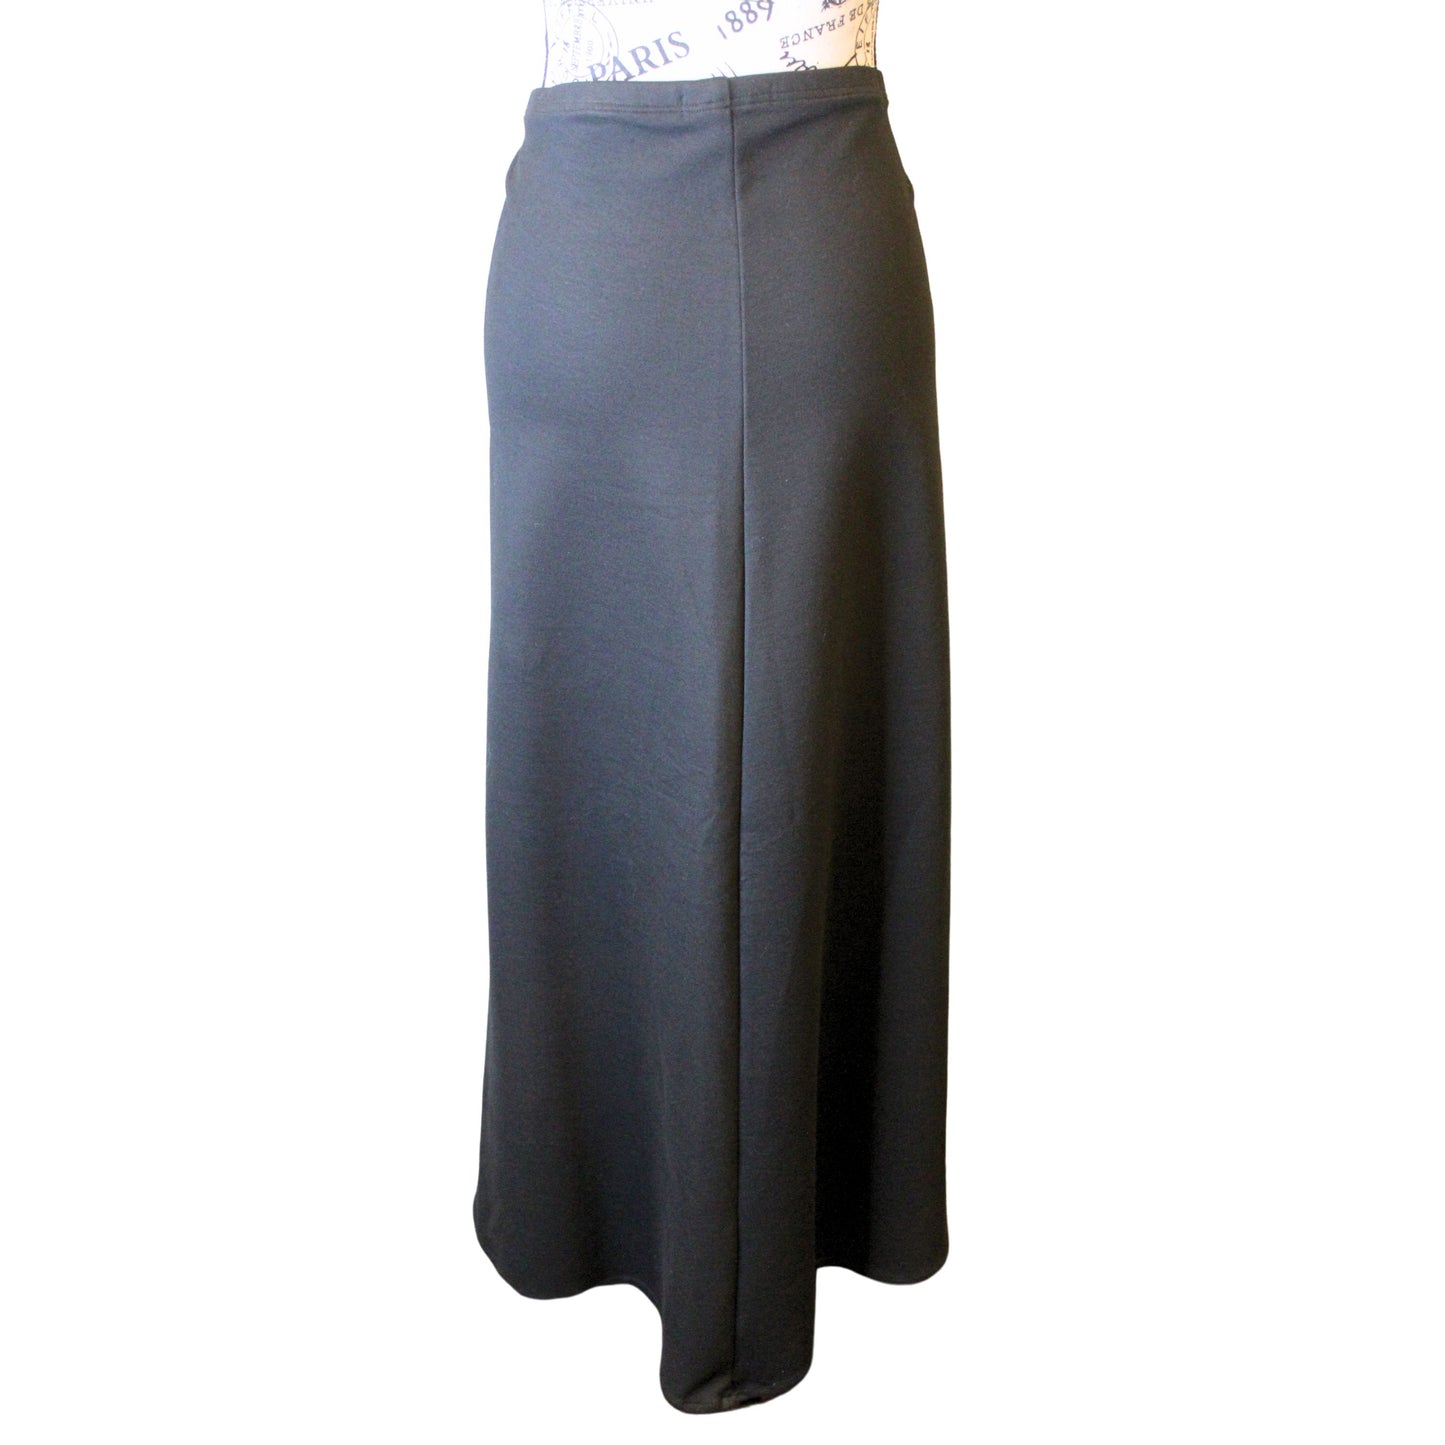 The VM Long Aline Skirt